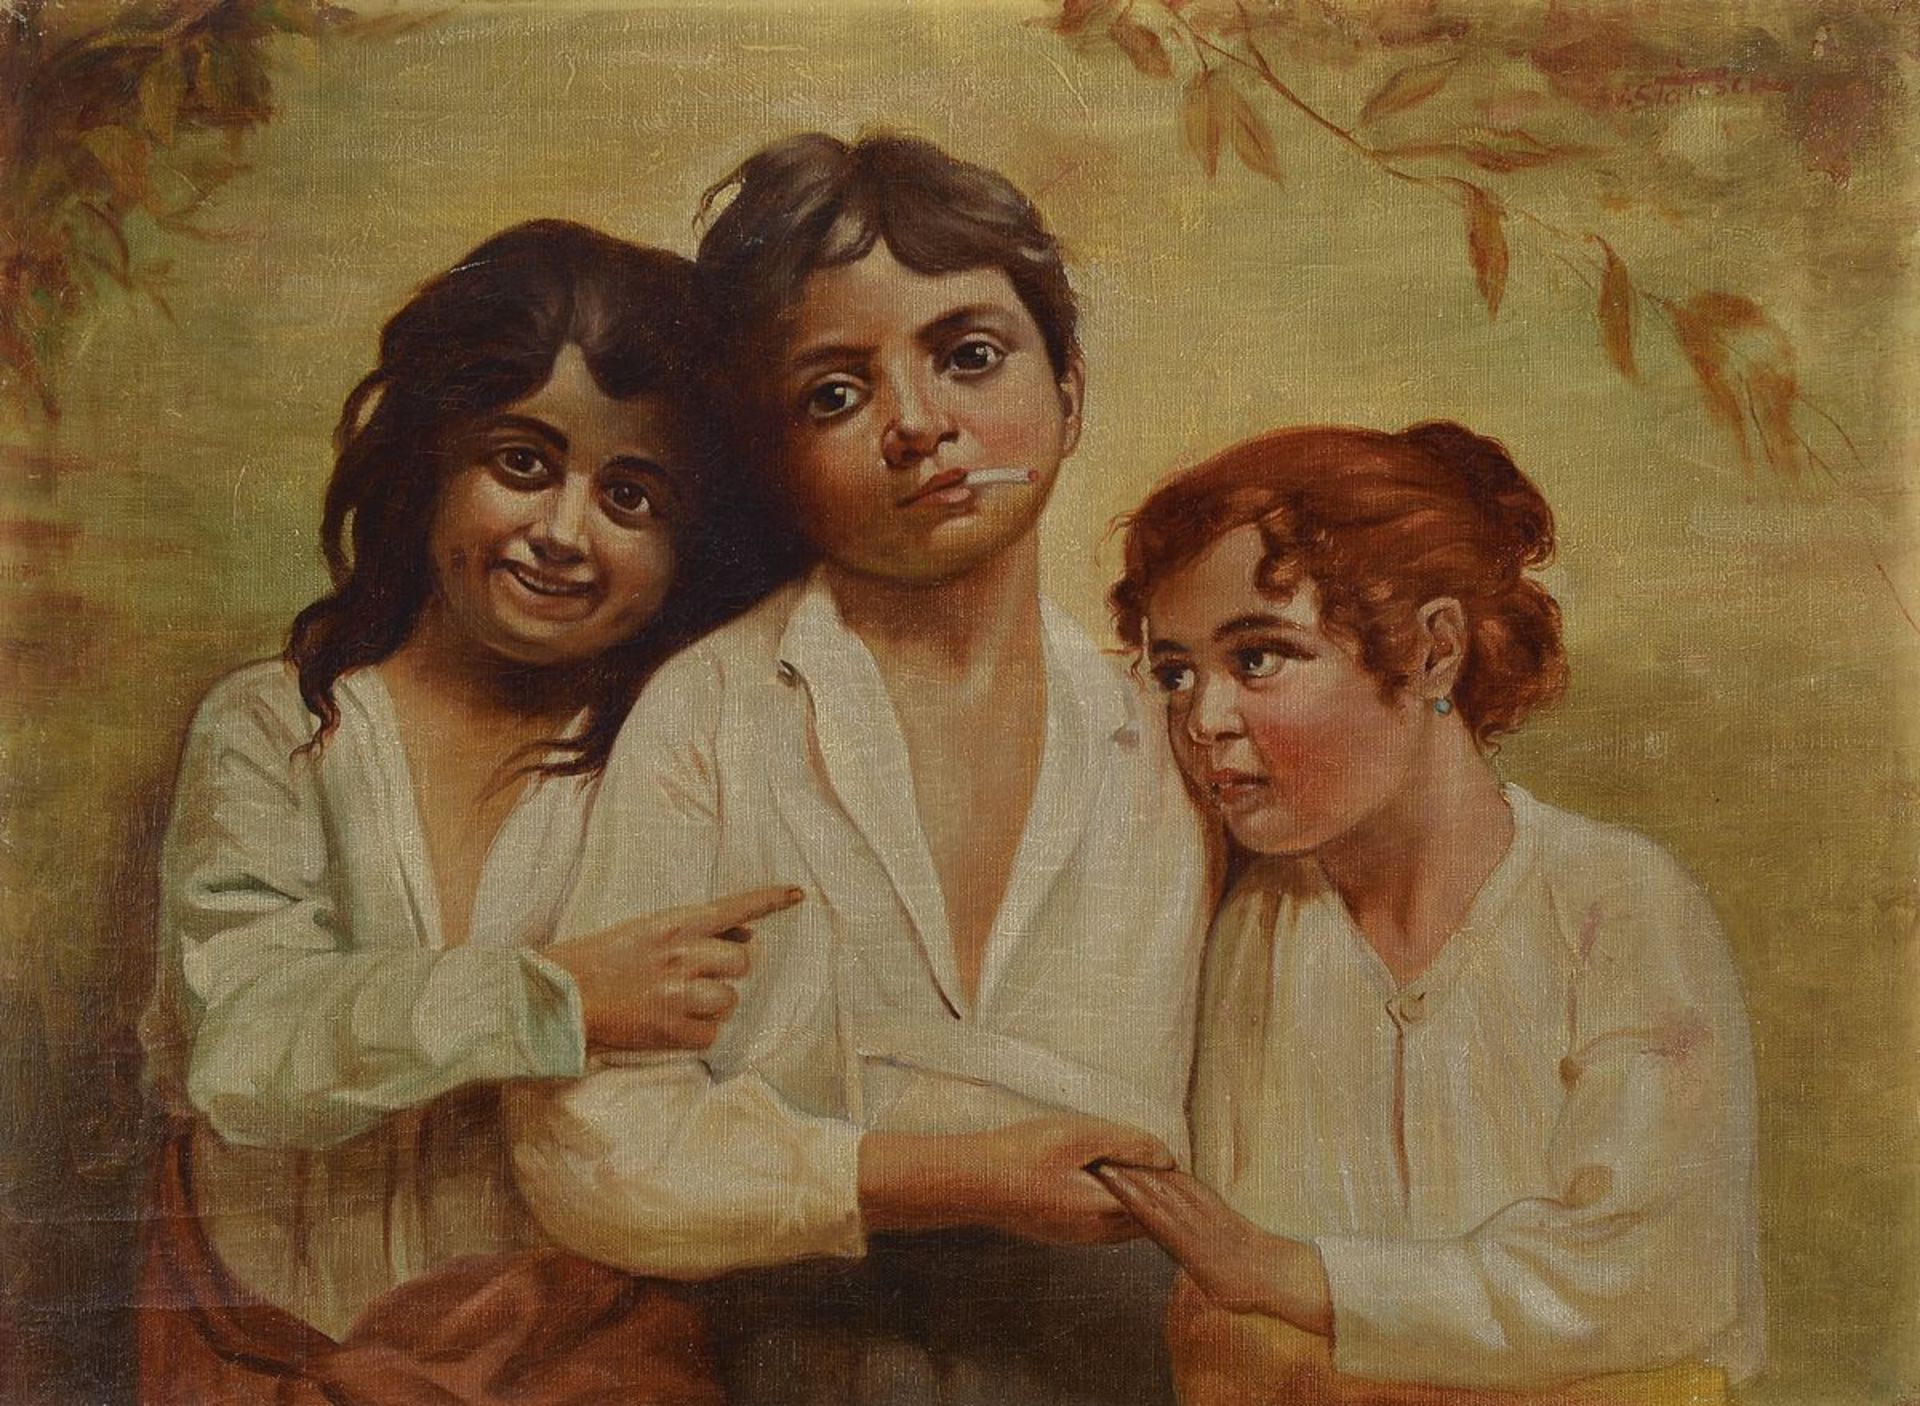 Ioan Statescu, 1892-1968, drei Kinder, der Junge in der Mitte eine Zigarette rauchend, Öl/Lwd auf